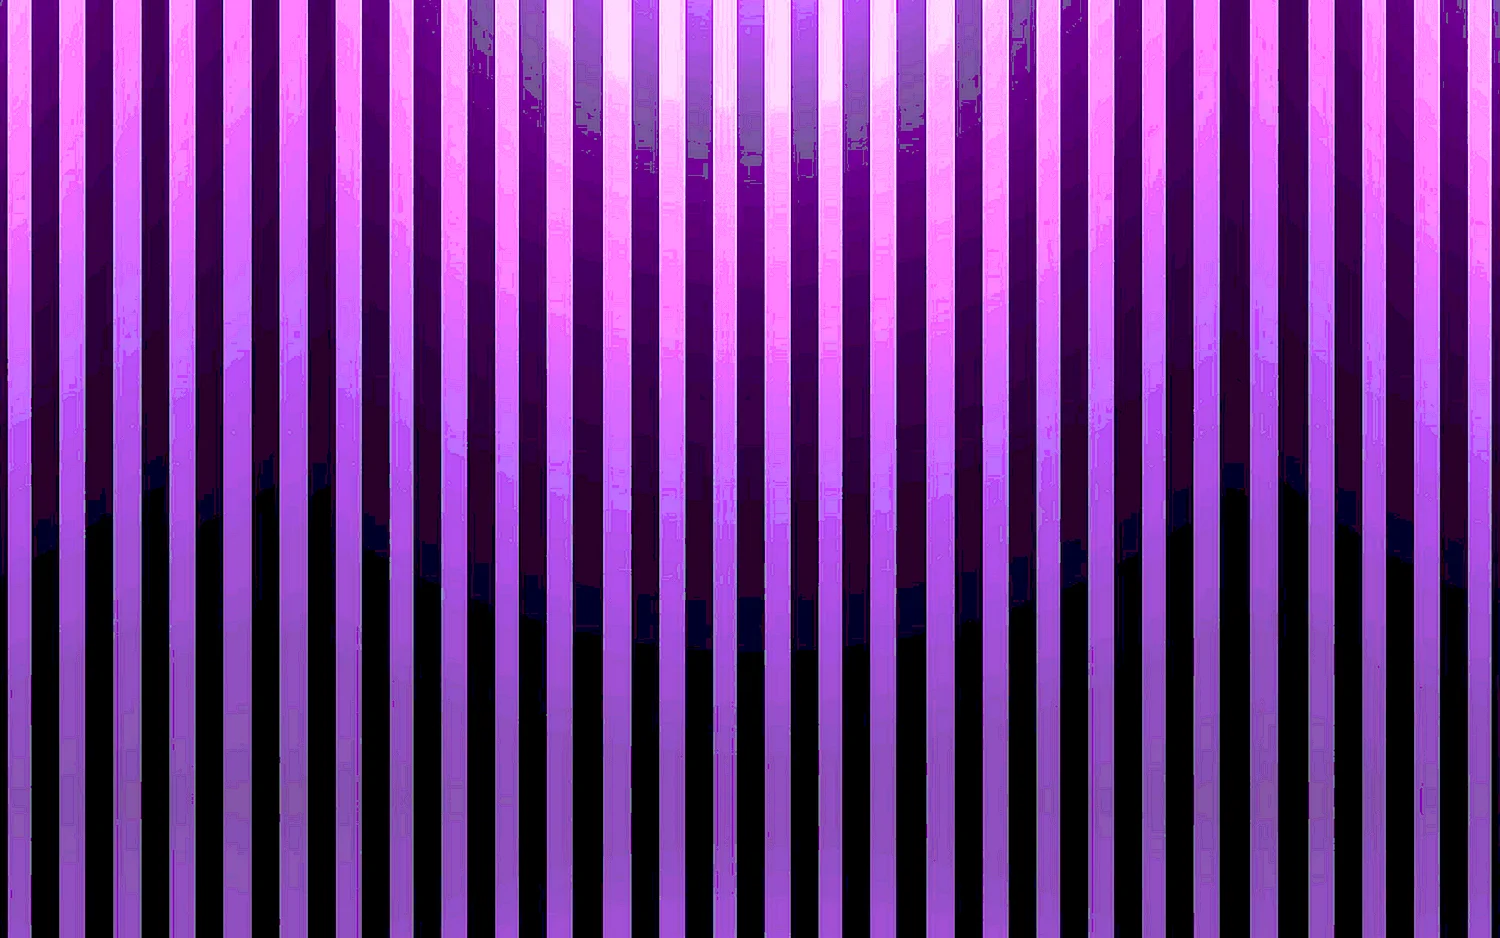 Фиолетовая полоска